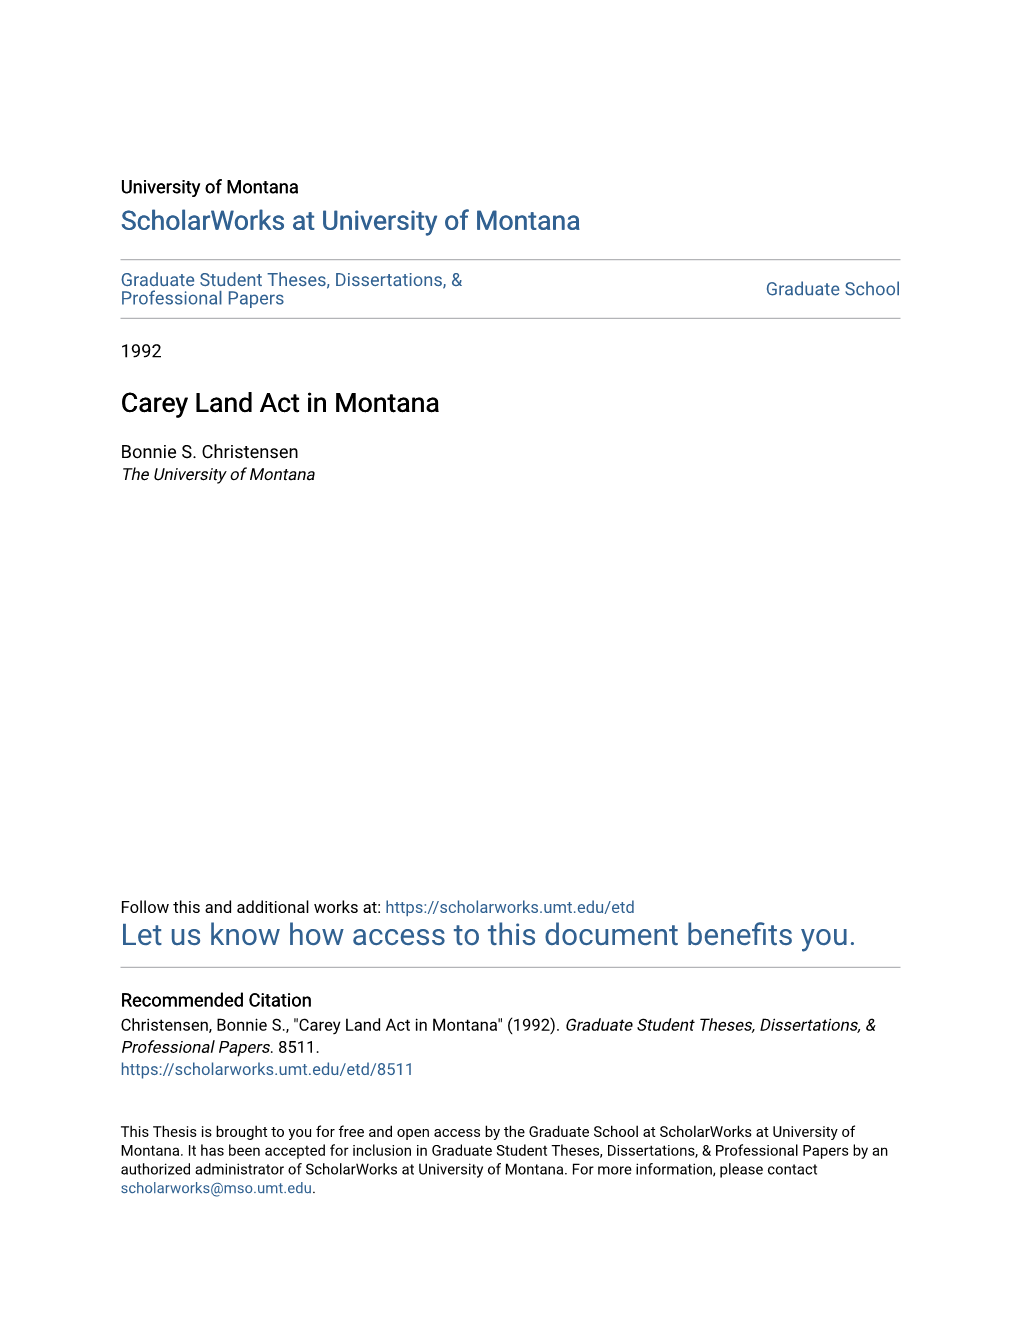 Carey Land Act in Montana